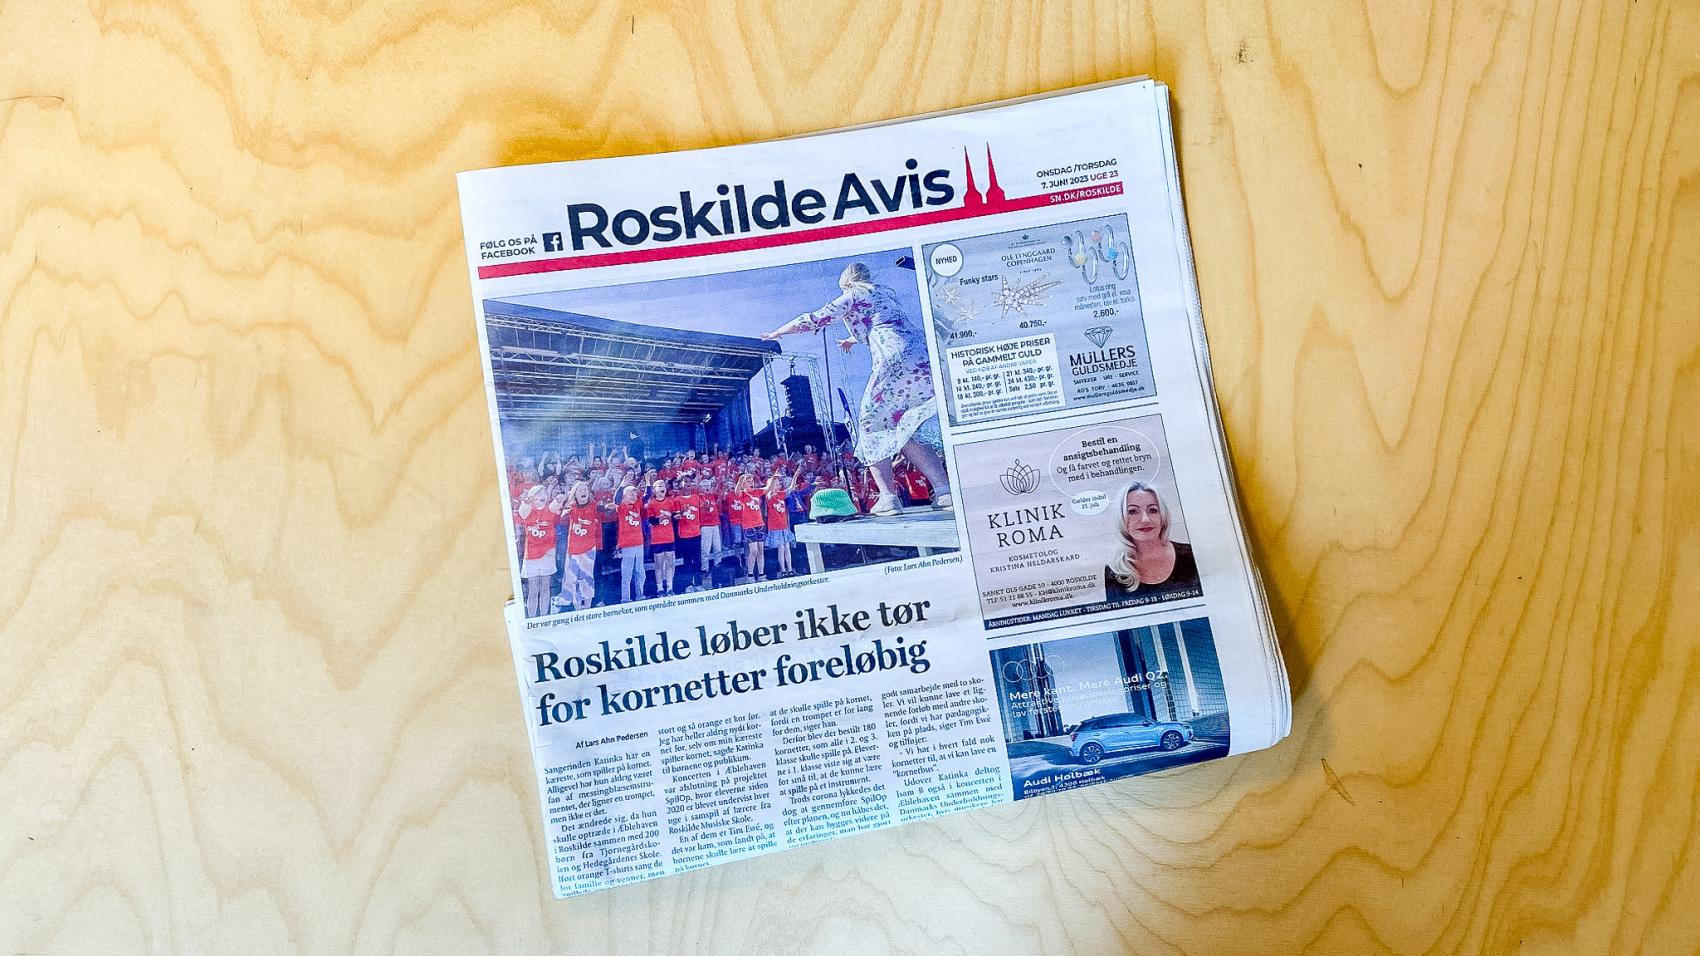 Billede af Roskilde Avis med artiklen med titlen "Roskilde løber ikke tør for kornetter foreløbig"